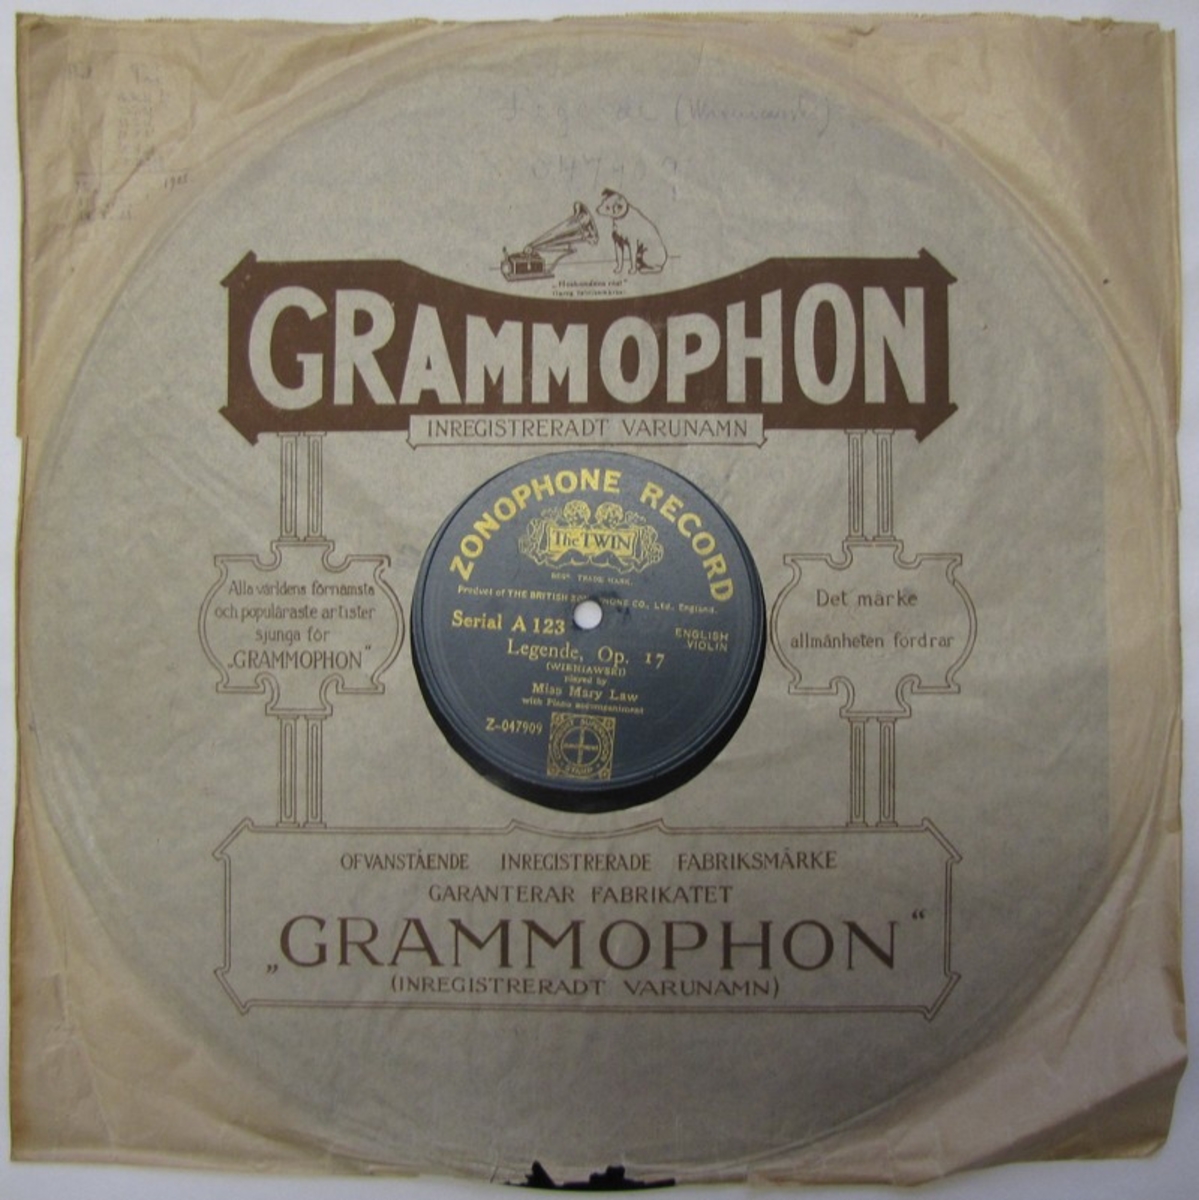 Grammofonskiva av märket HMV, spår på båda sidorna